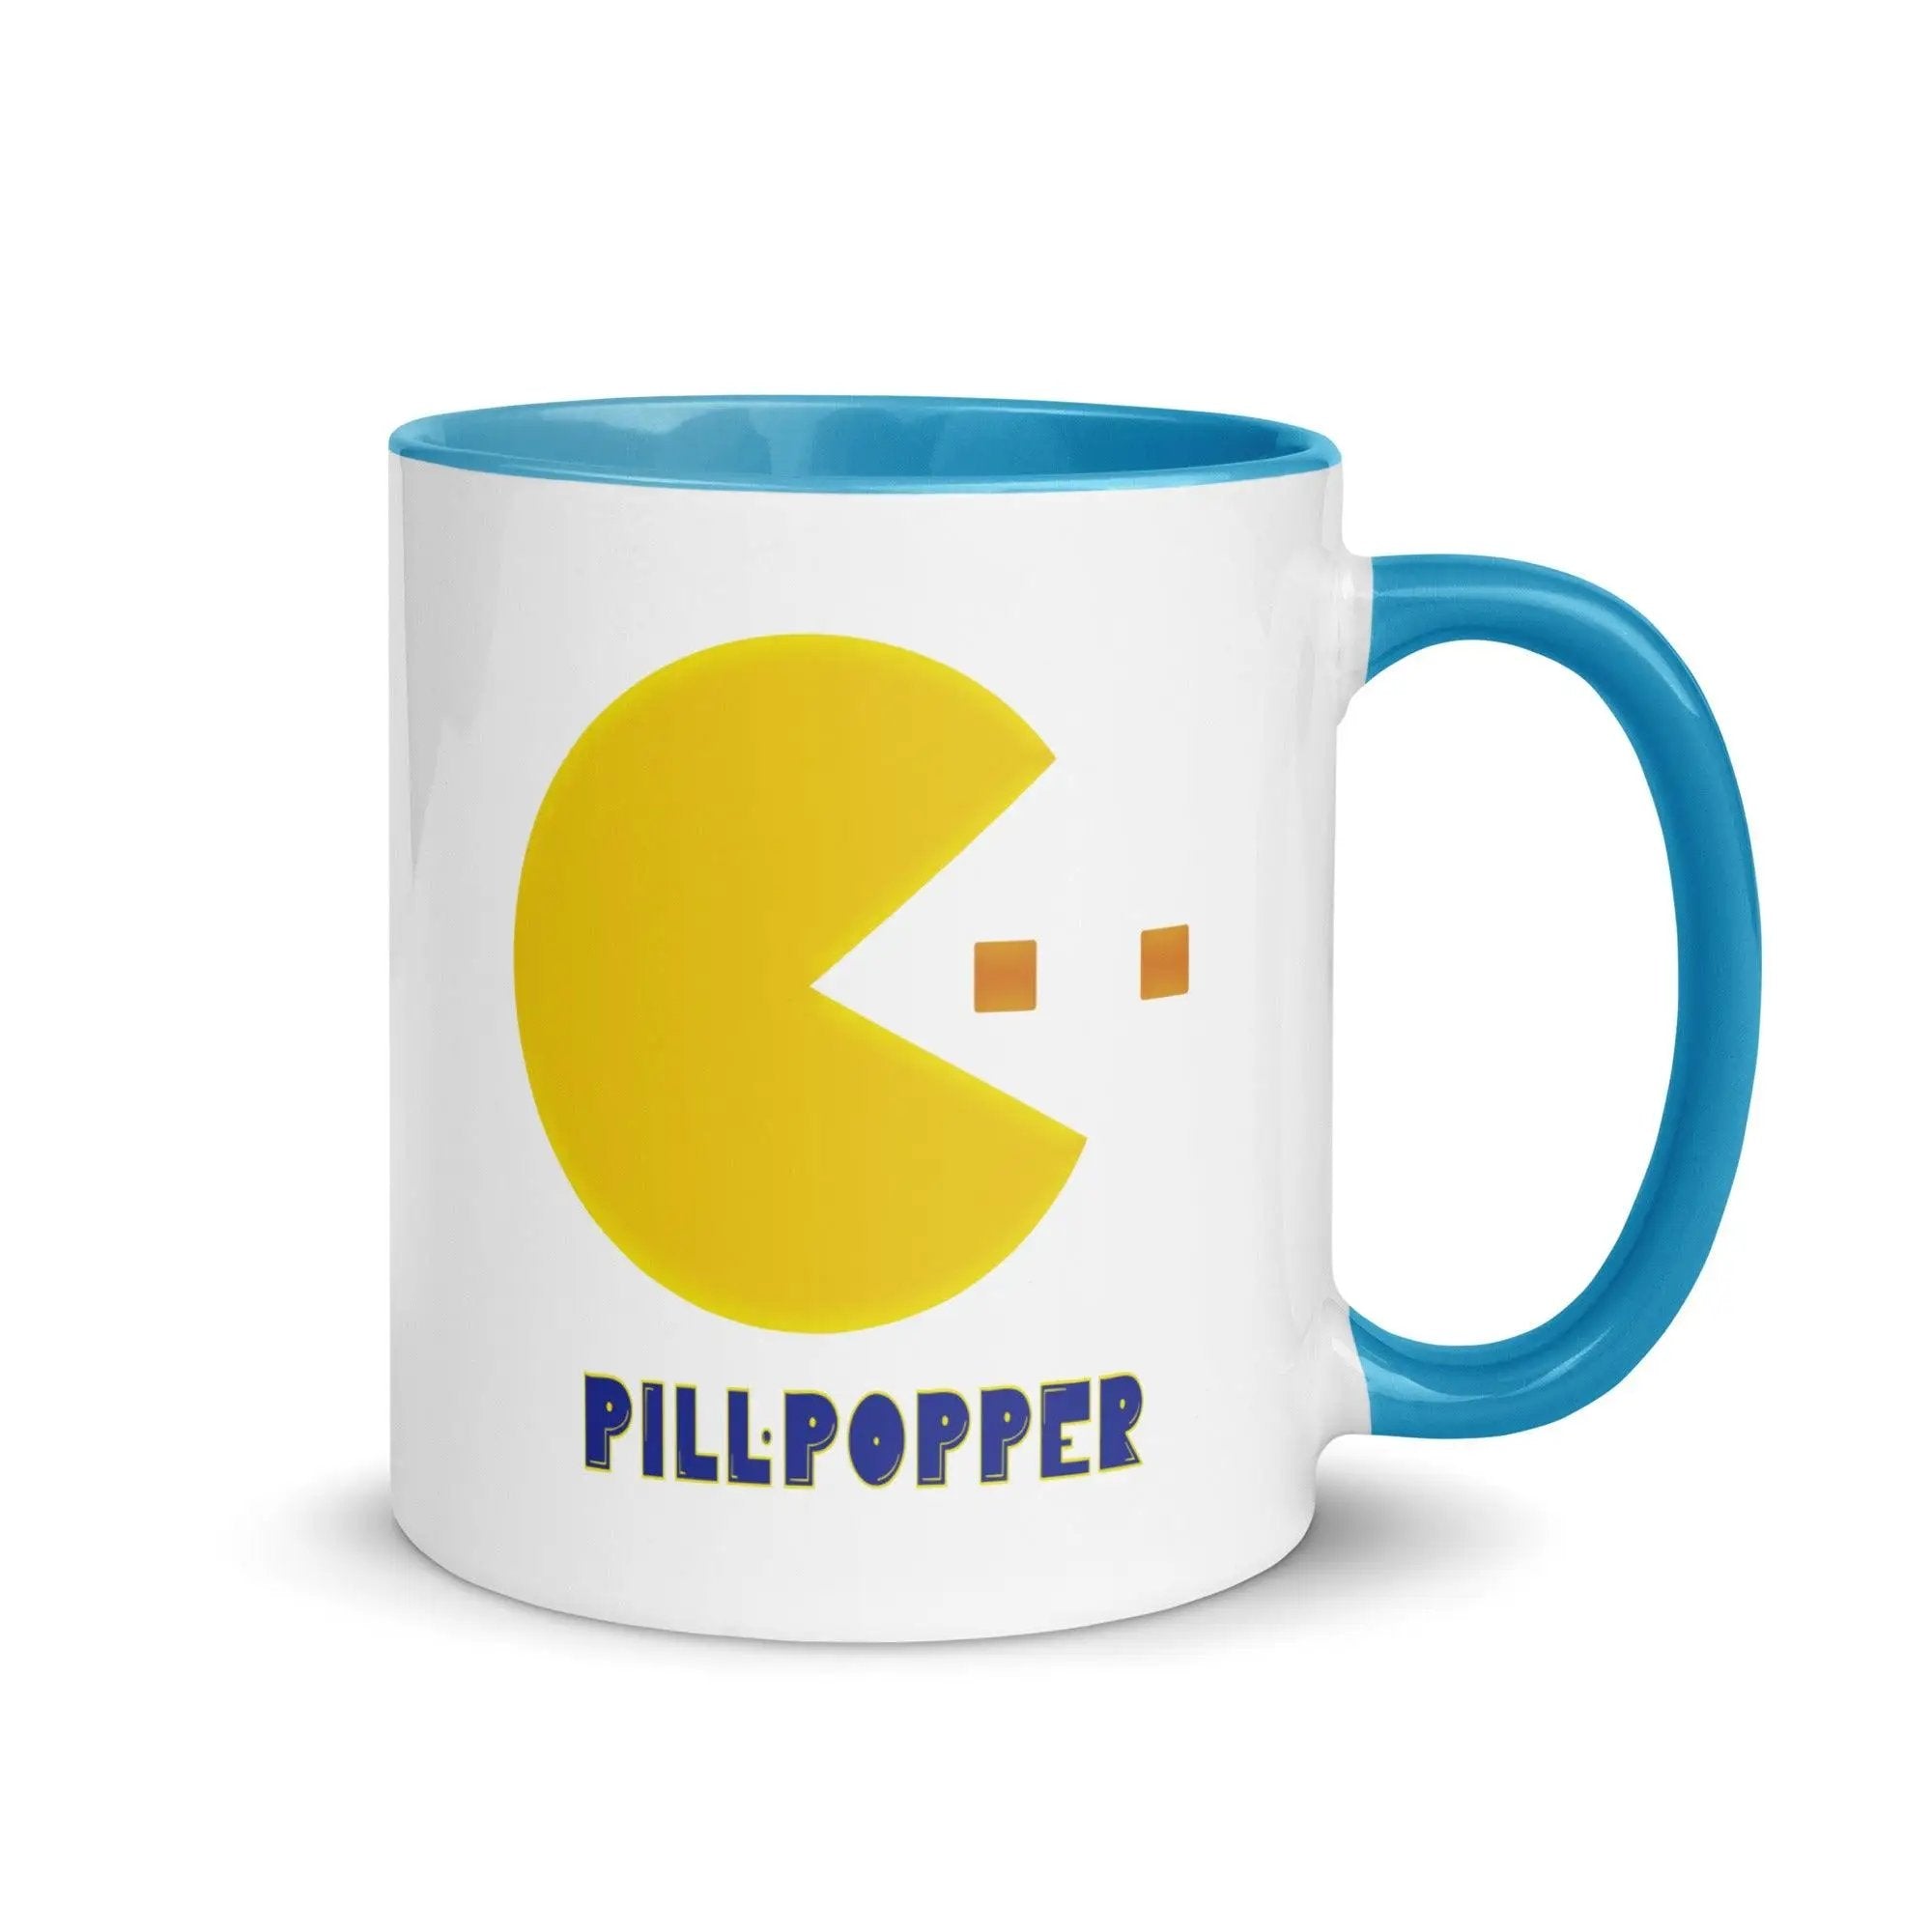 Pill-Popper Mug with Color Inside